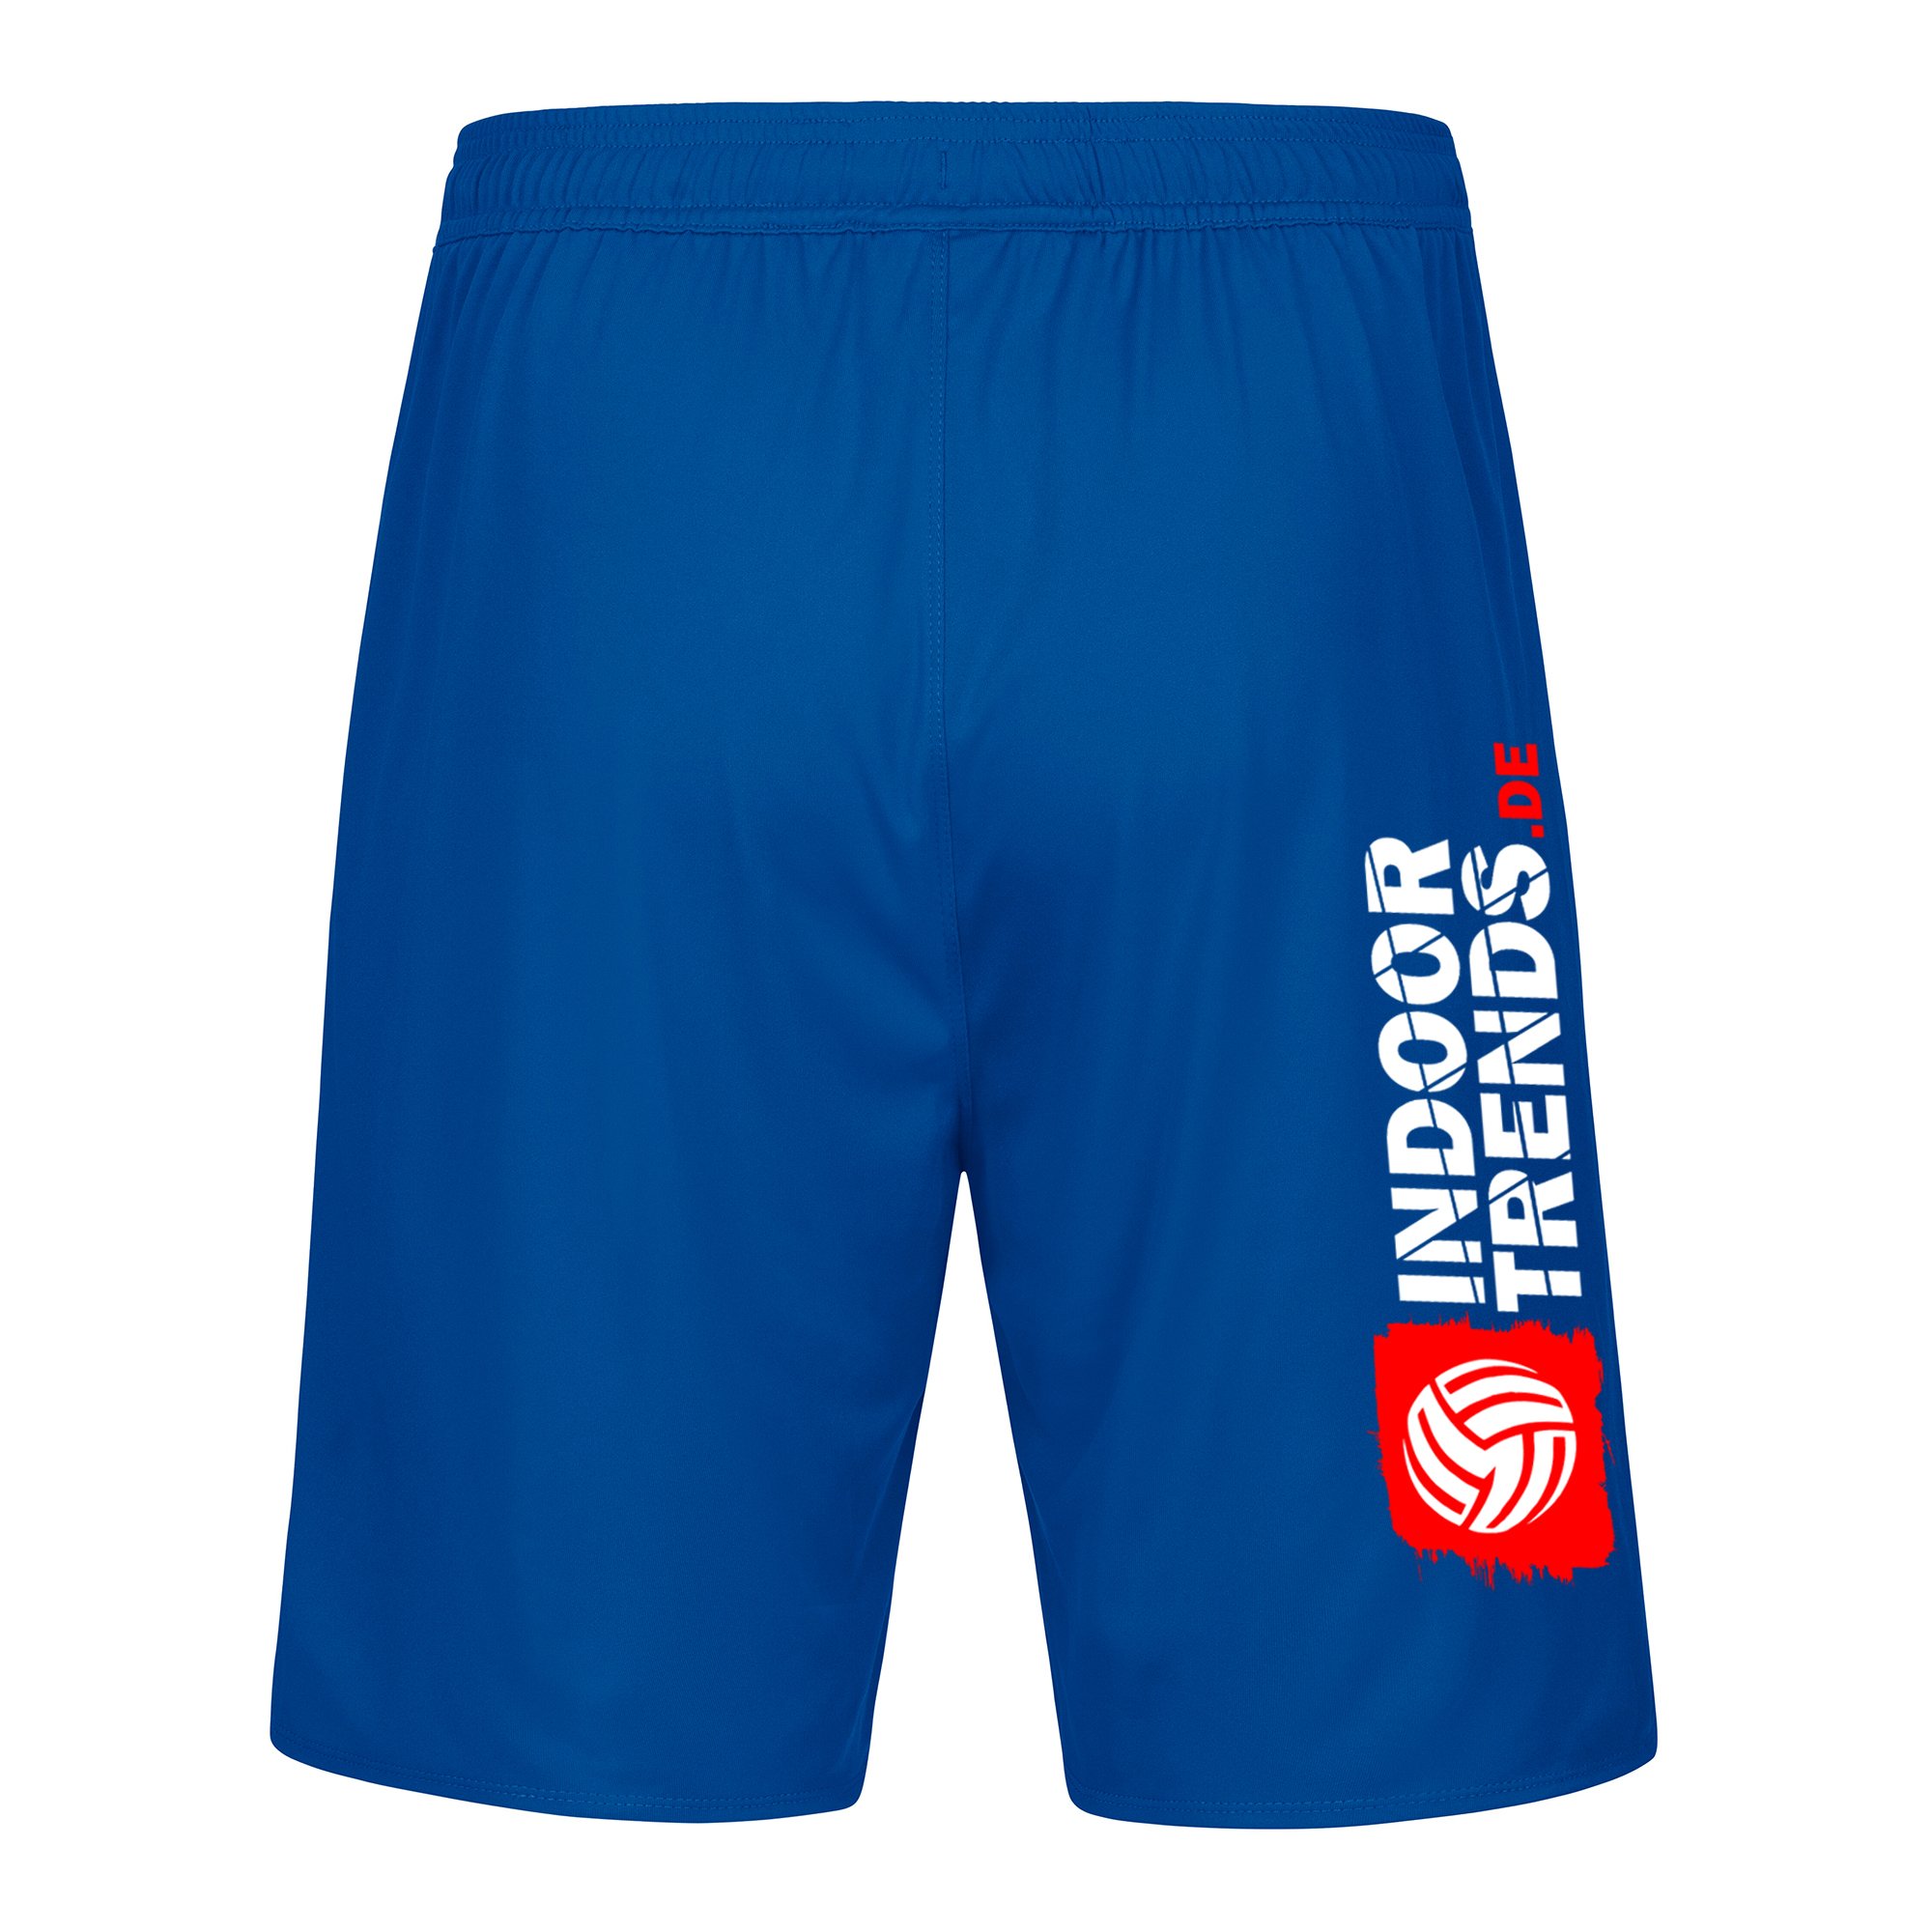 SG LVB Leipzig Shorts